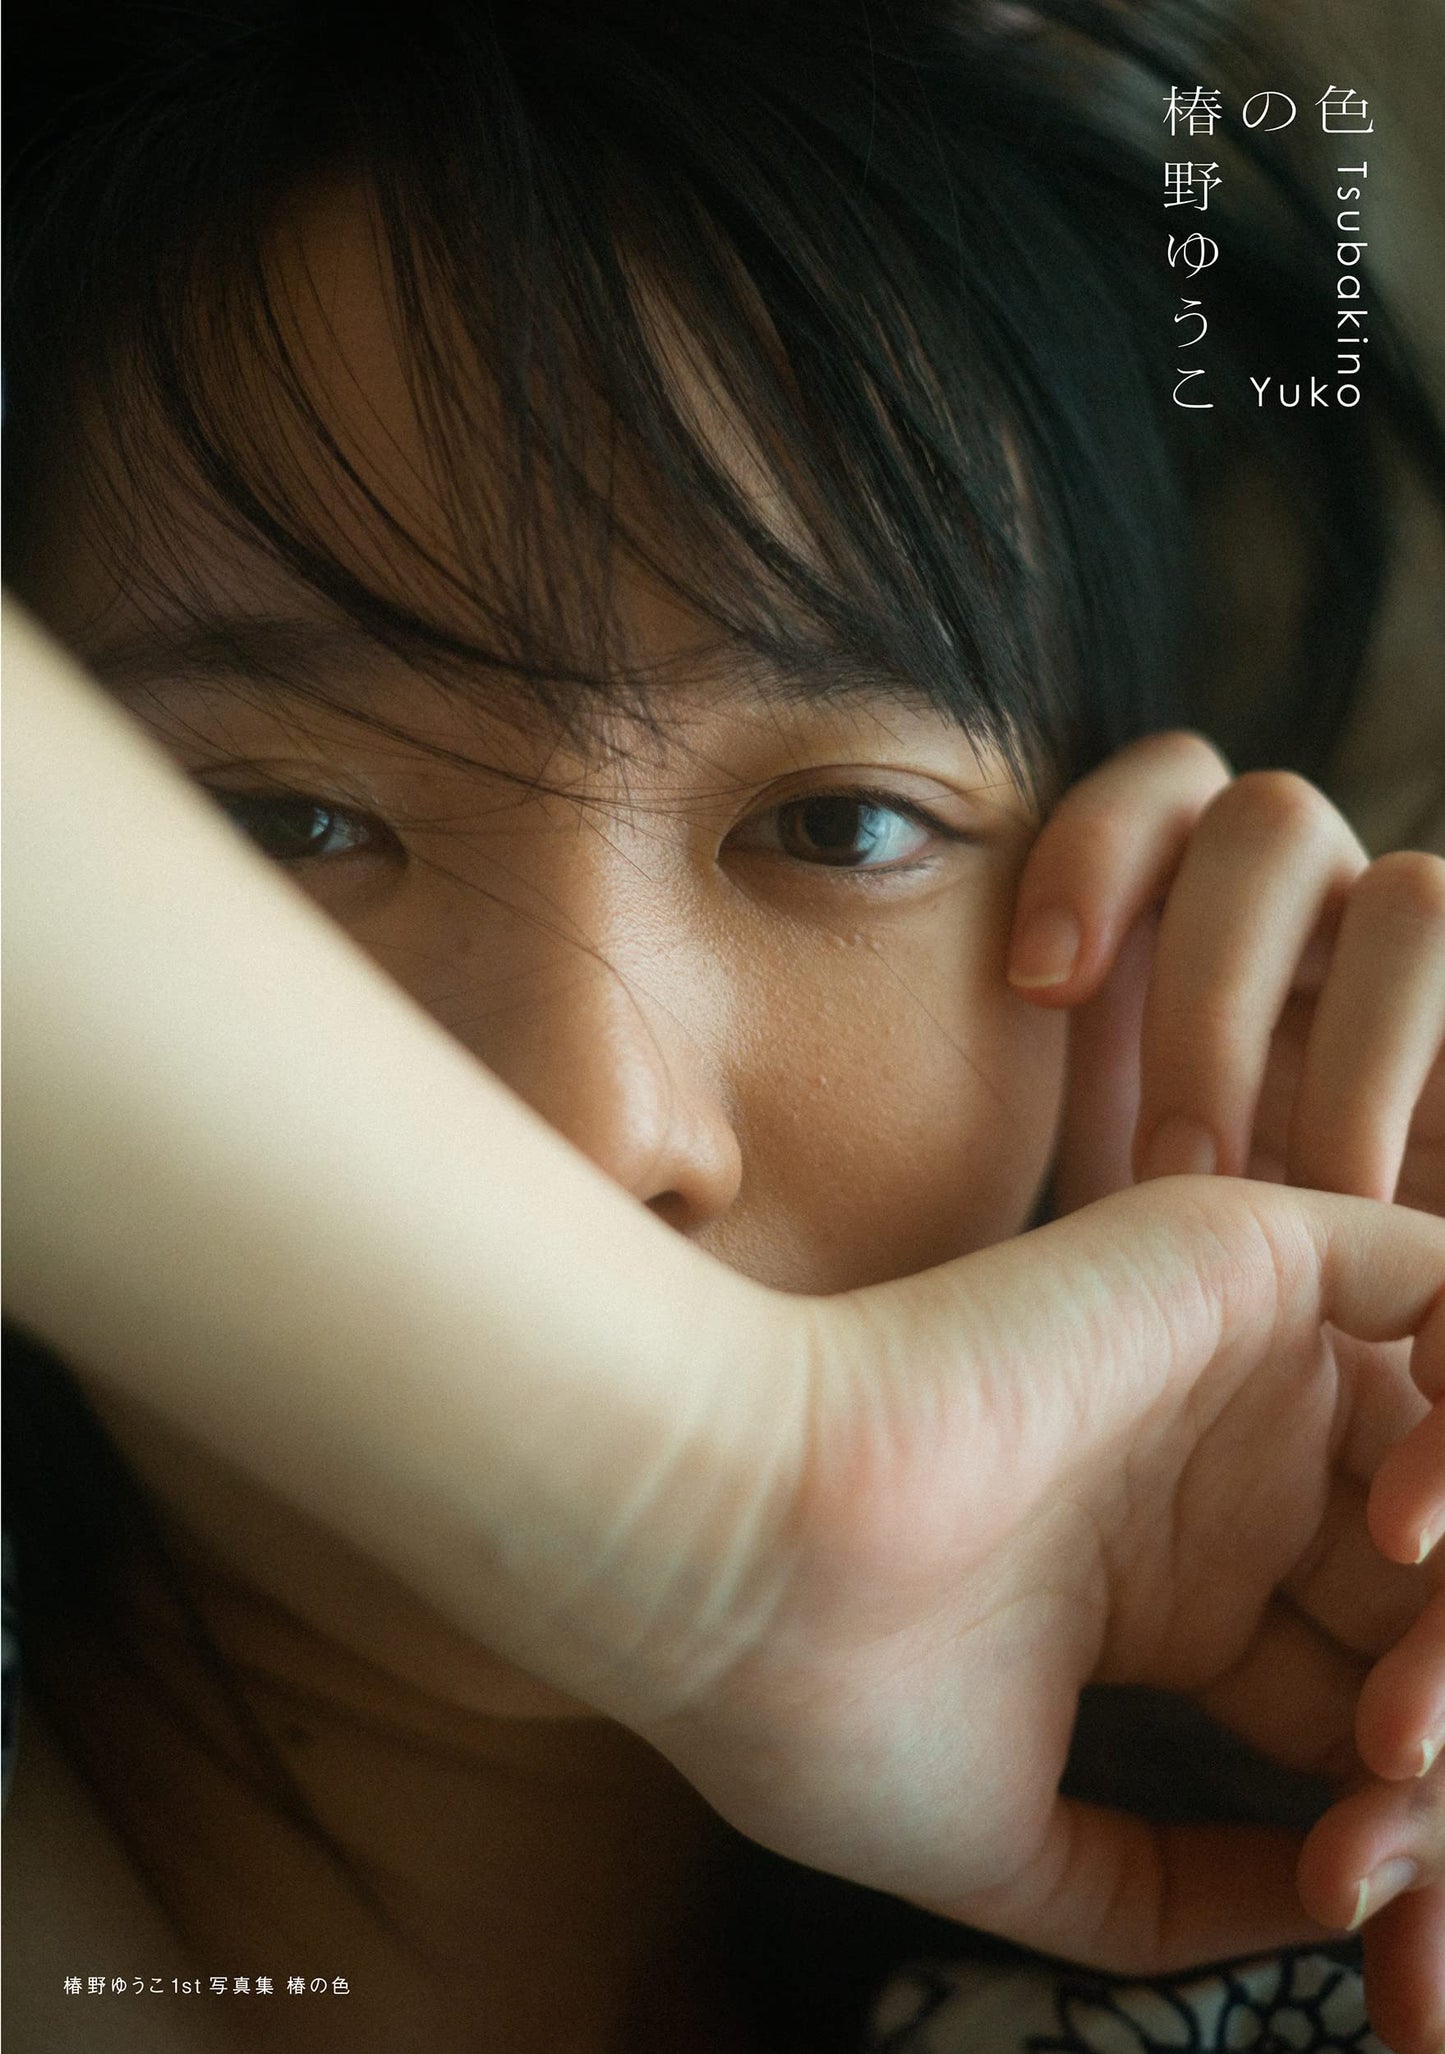 Yuko Tsubakino 1st Photo Book "Tsubaki no iro"